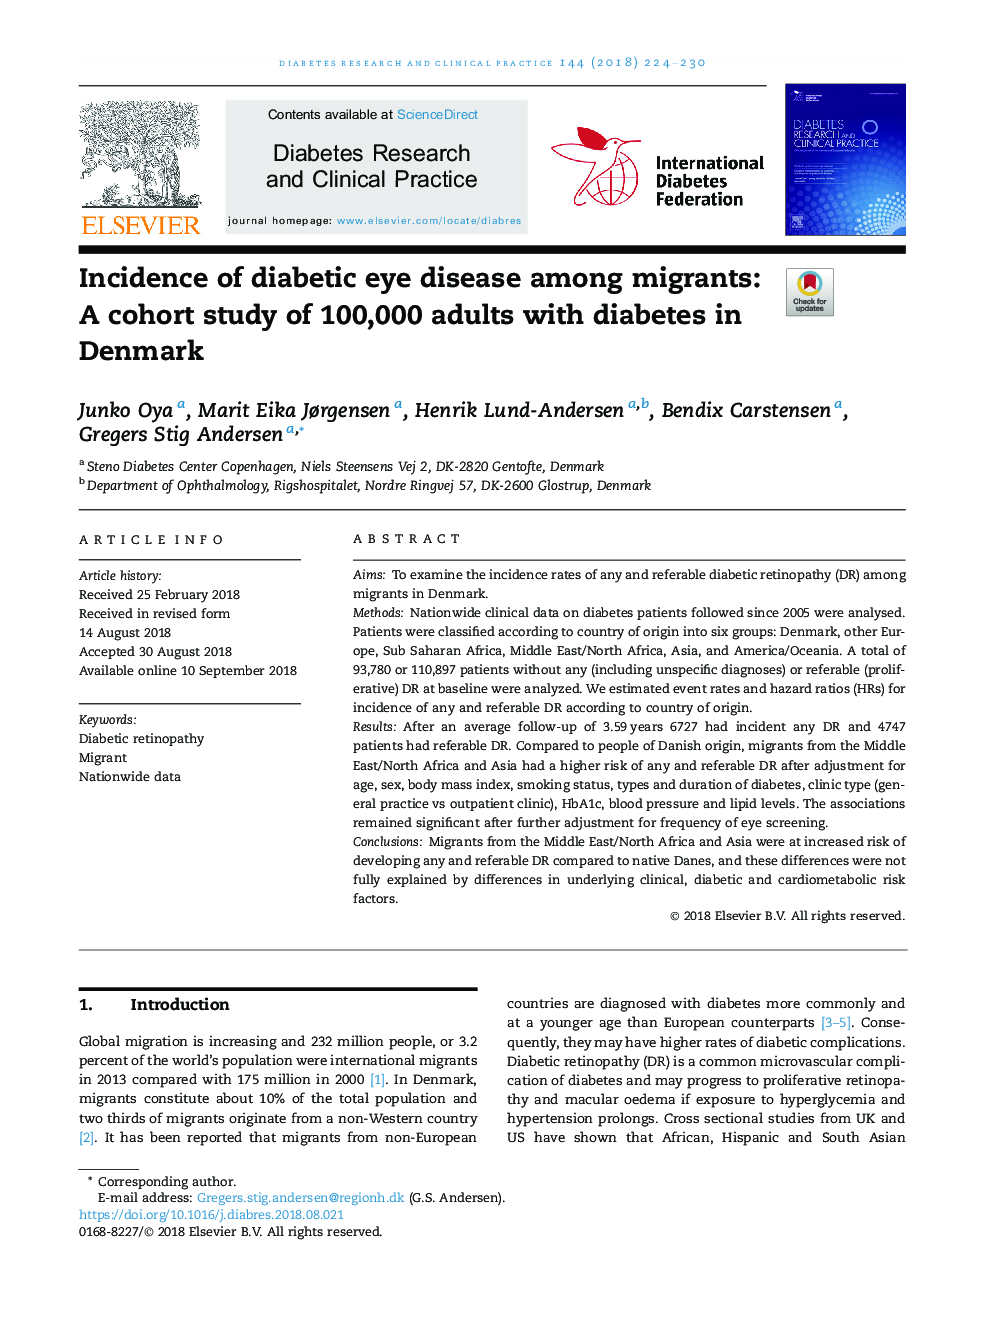 بروز بیماری چشم دیابتی در میان مهاجران: یک مطالعه کوهورت 100،000 بزرگسال مبتلا به دیابت در دانمارک